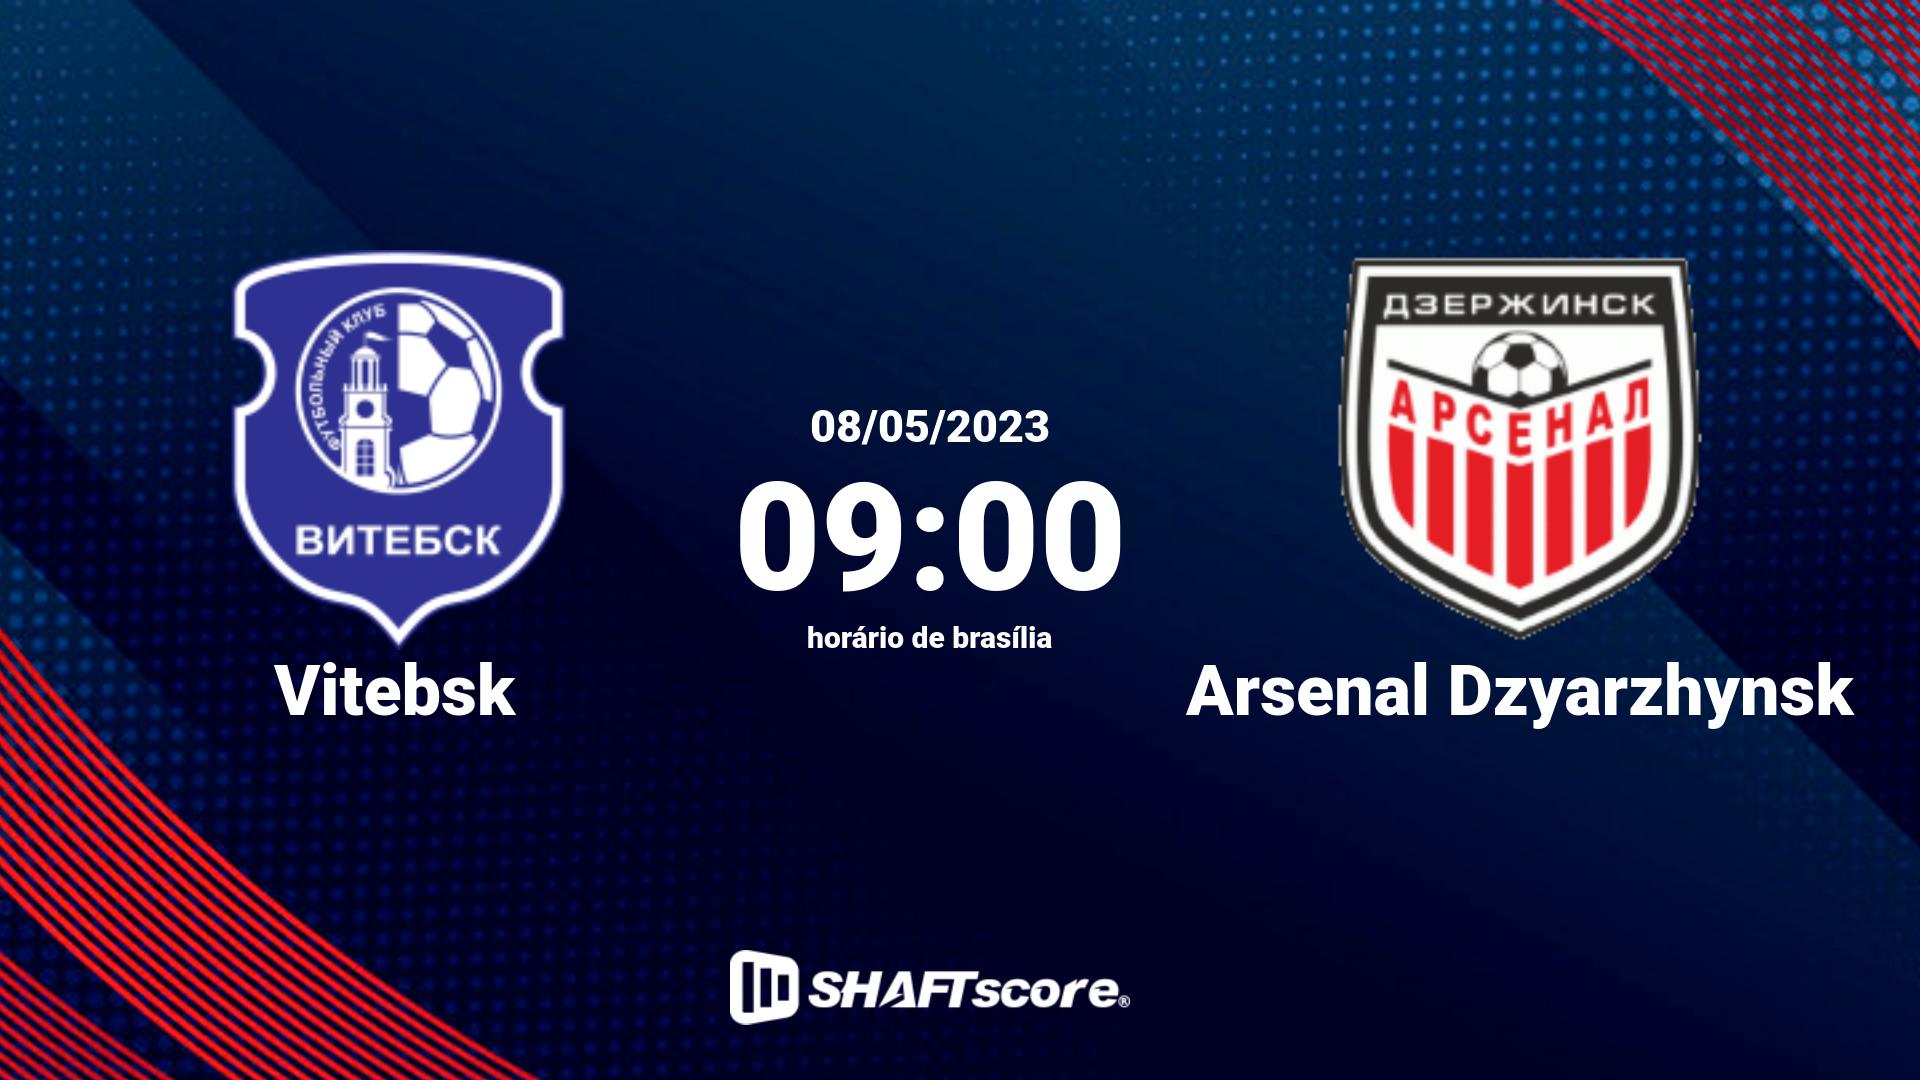 Estatísticas do jogo Vitebsk vs Arsenal Dzyarzhynsk 08.05 09:00